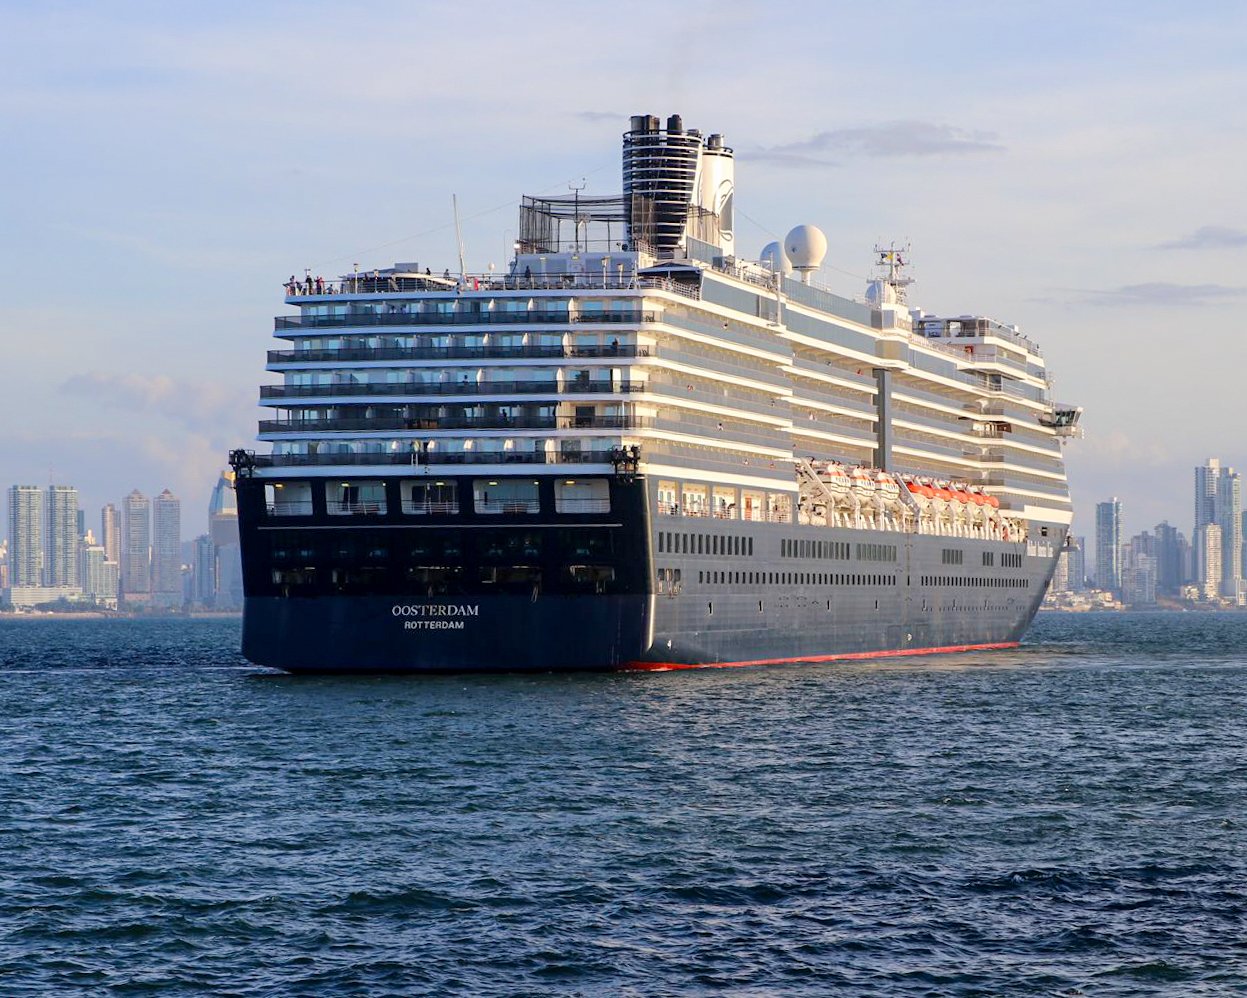 Desembarcan 4,200 turistas a bordo de los cruceros Oosterdam y Rhapsody Of The Seas